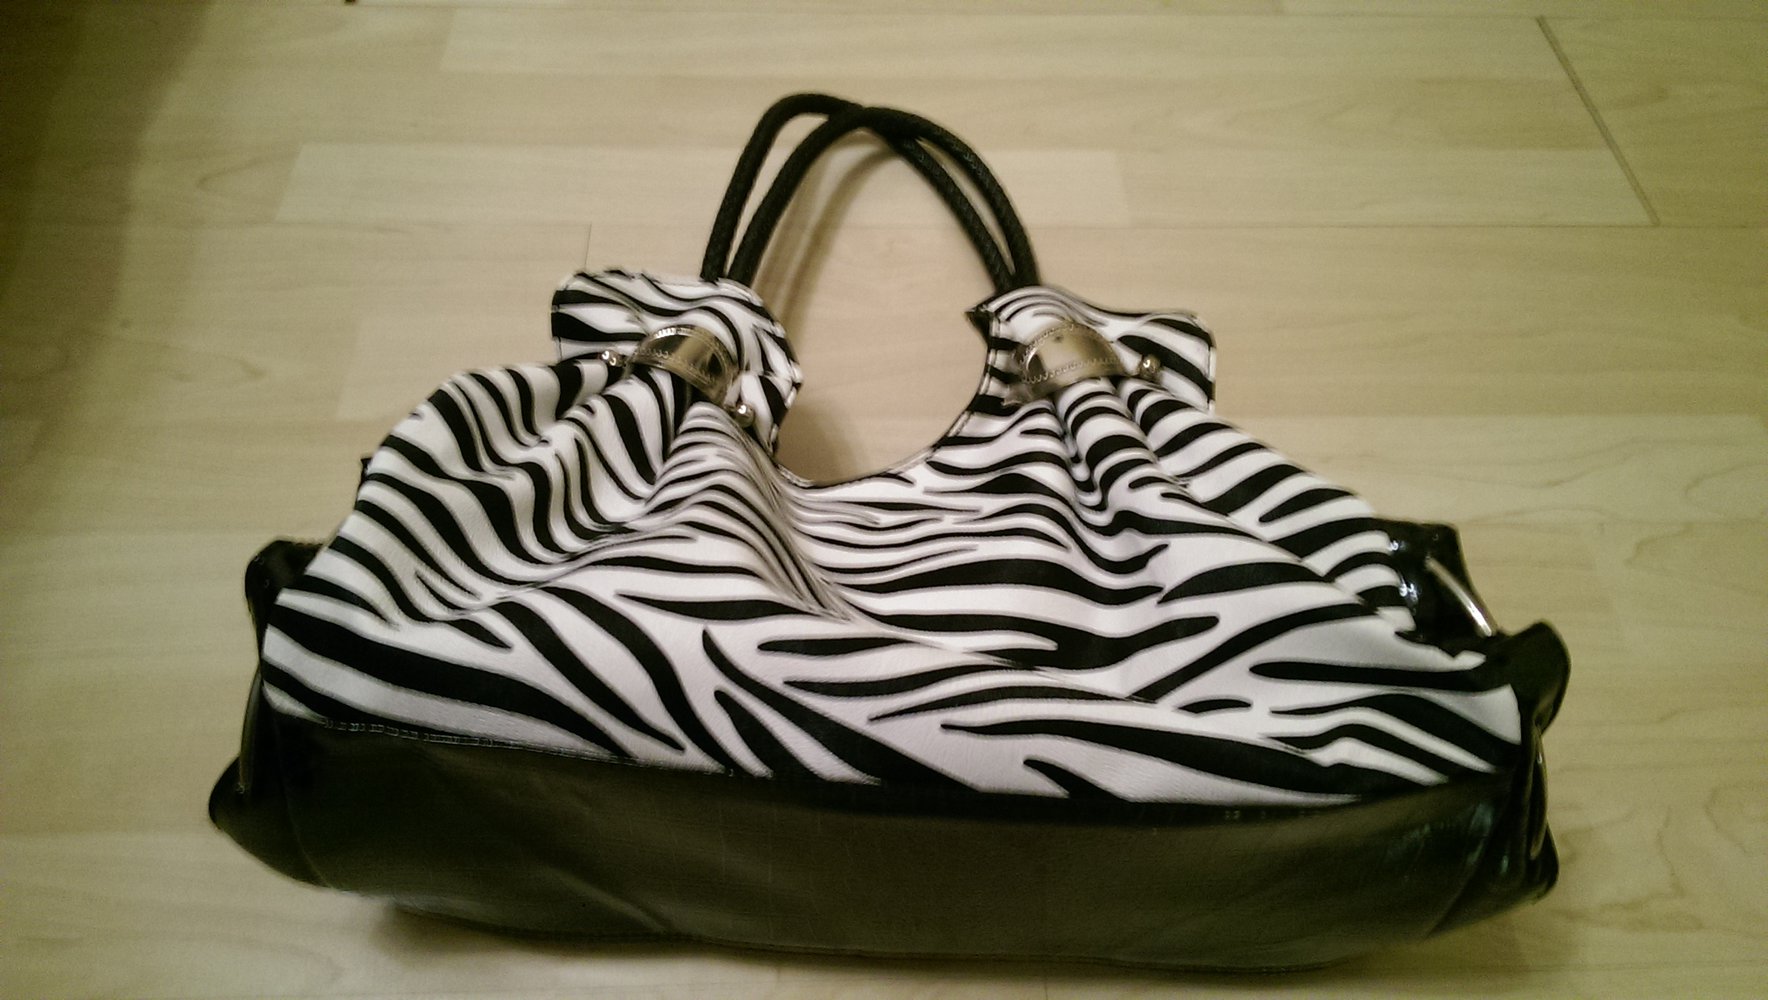 Schöne Handtasche im Zebra-Look